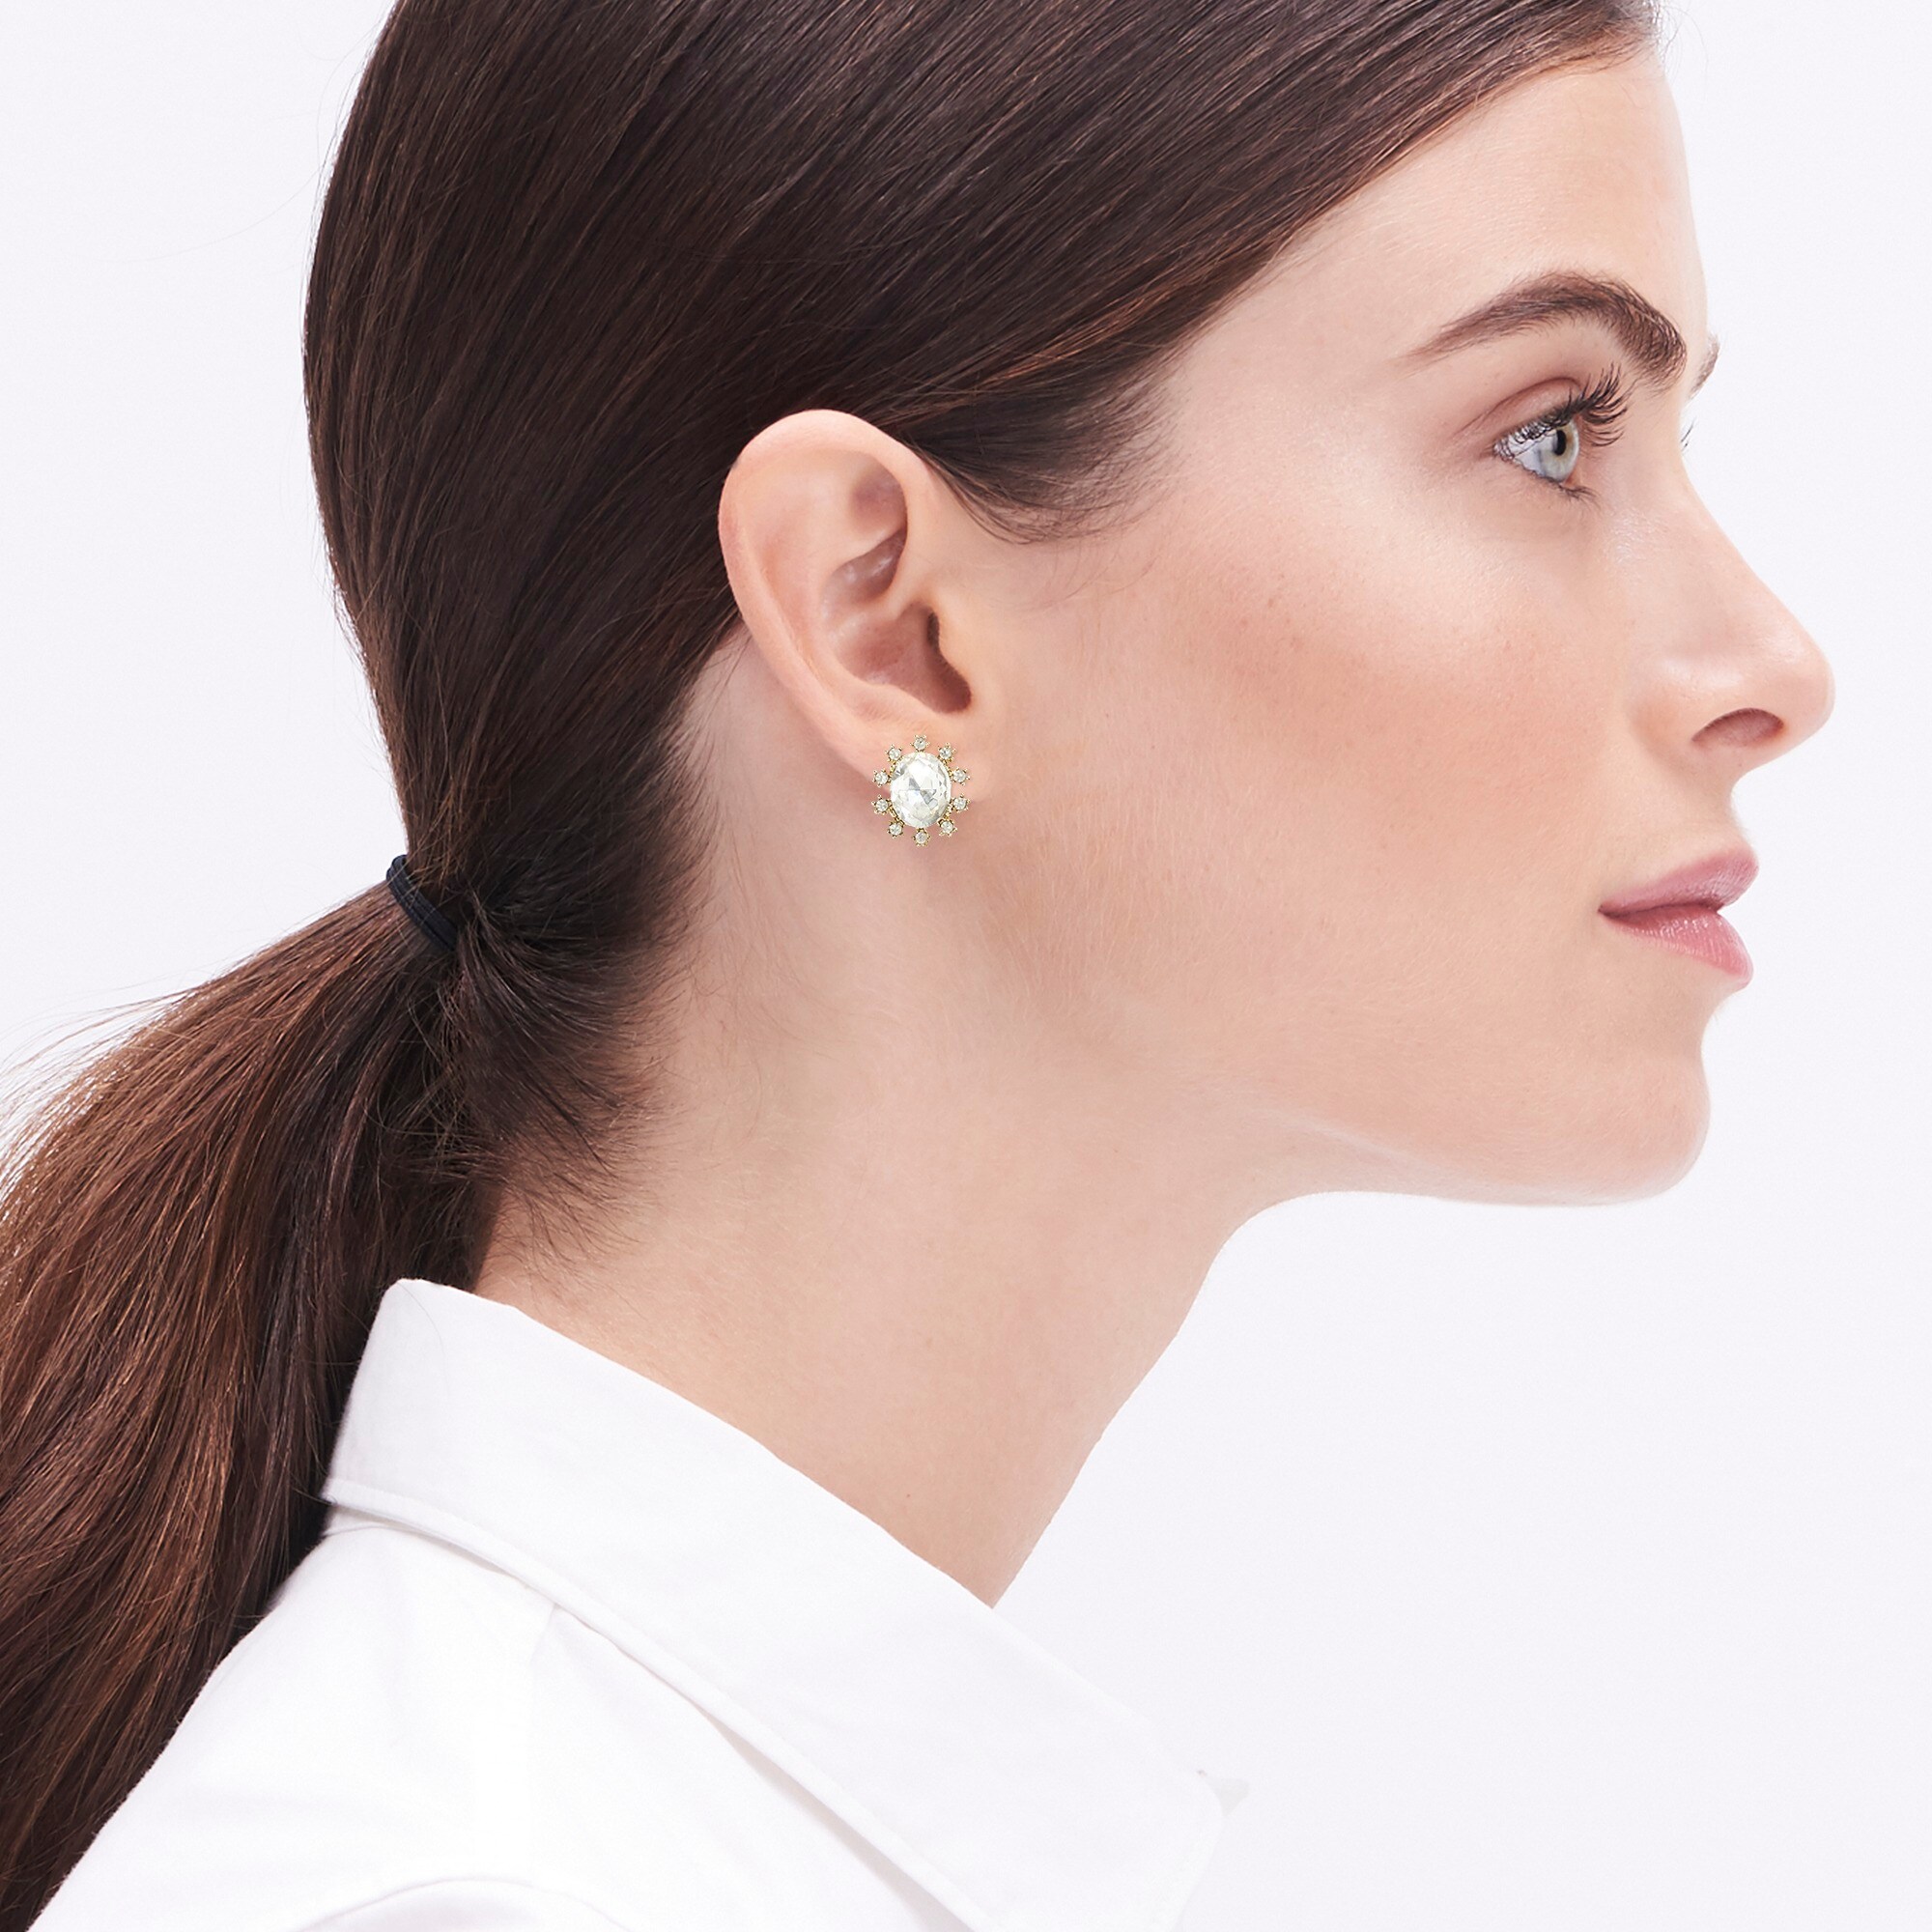 Oval gem earrings